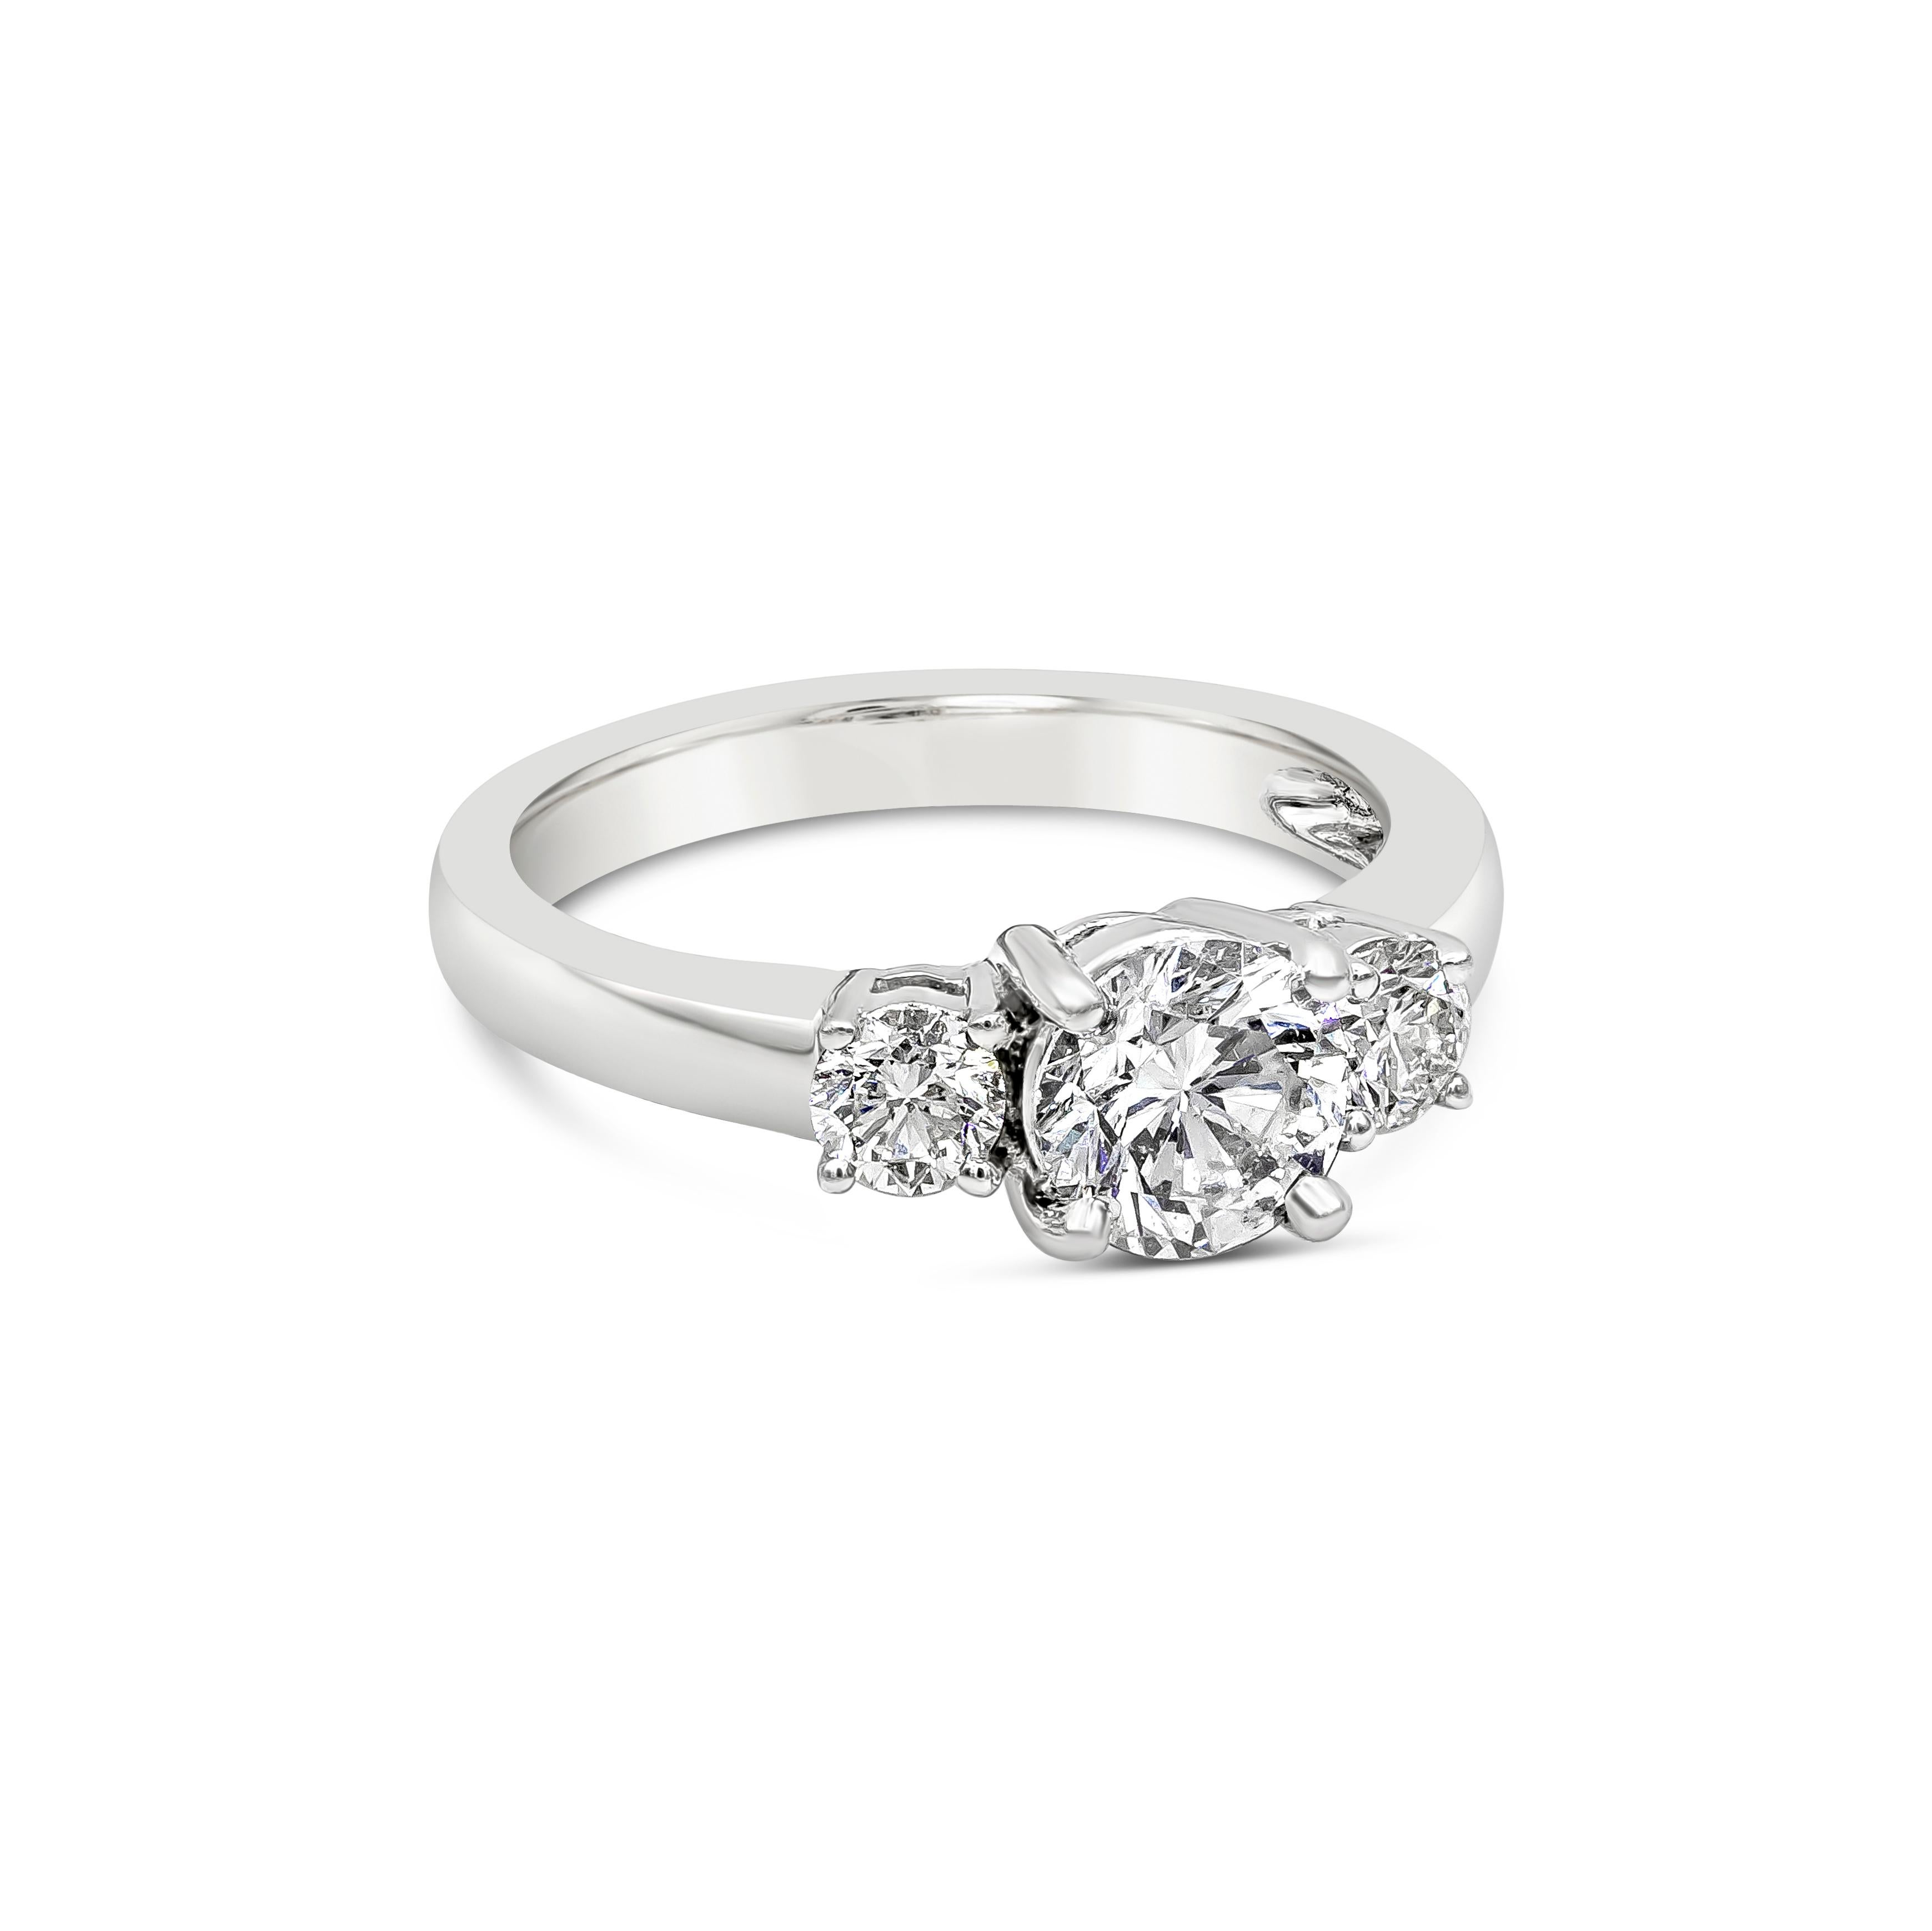 Ein luxuriöser Verlobungsring mit einem runden Diamanten und drei Steinen wird immer zeitlos sein. Dieser Ring präsentiert einen GIA-zertifizierten Mittelstein mit einem Gewicht von 1,02 Karat. Der runde Diamant ist mit Farbe D und Reinheit SI2